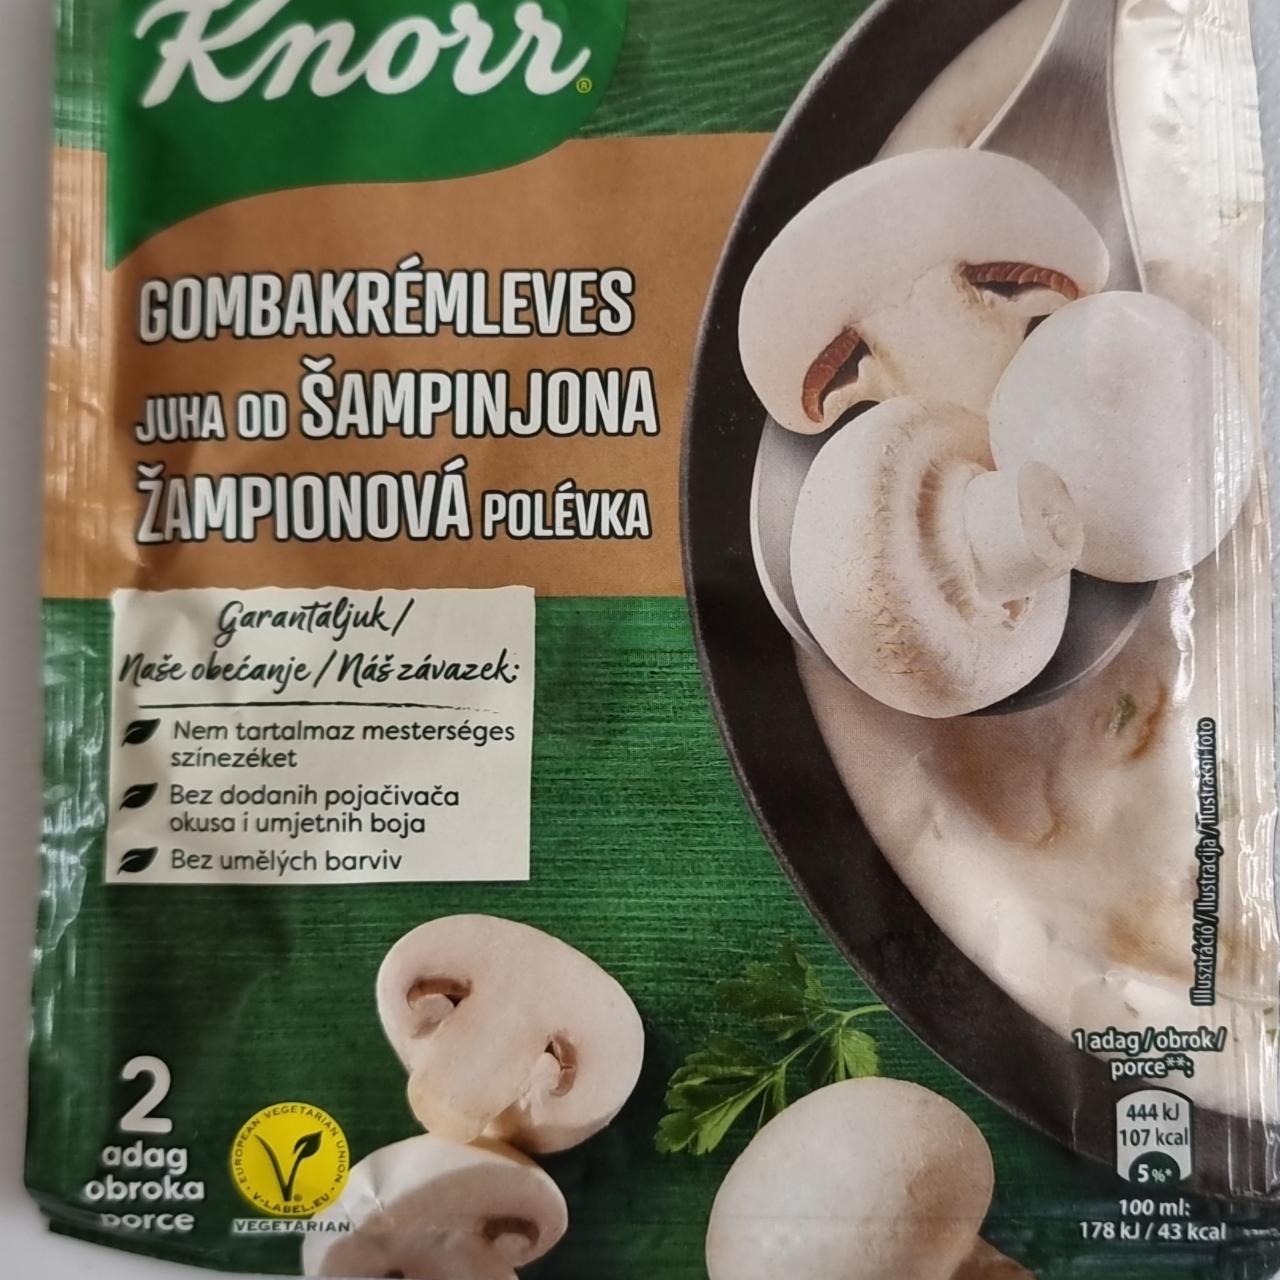 Fotografie - Žampionová polévka Knorr